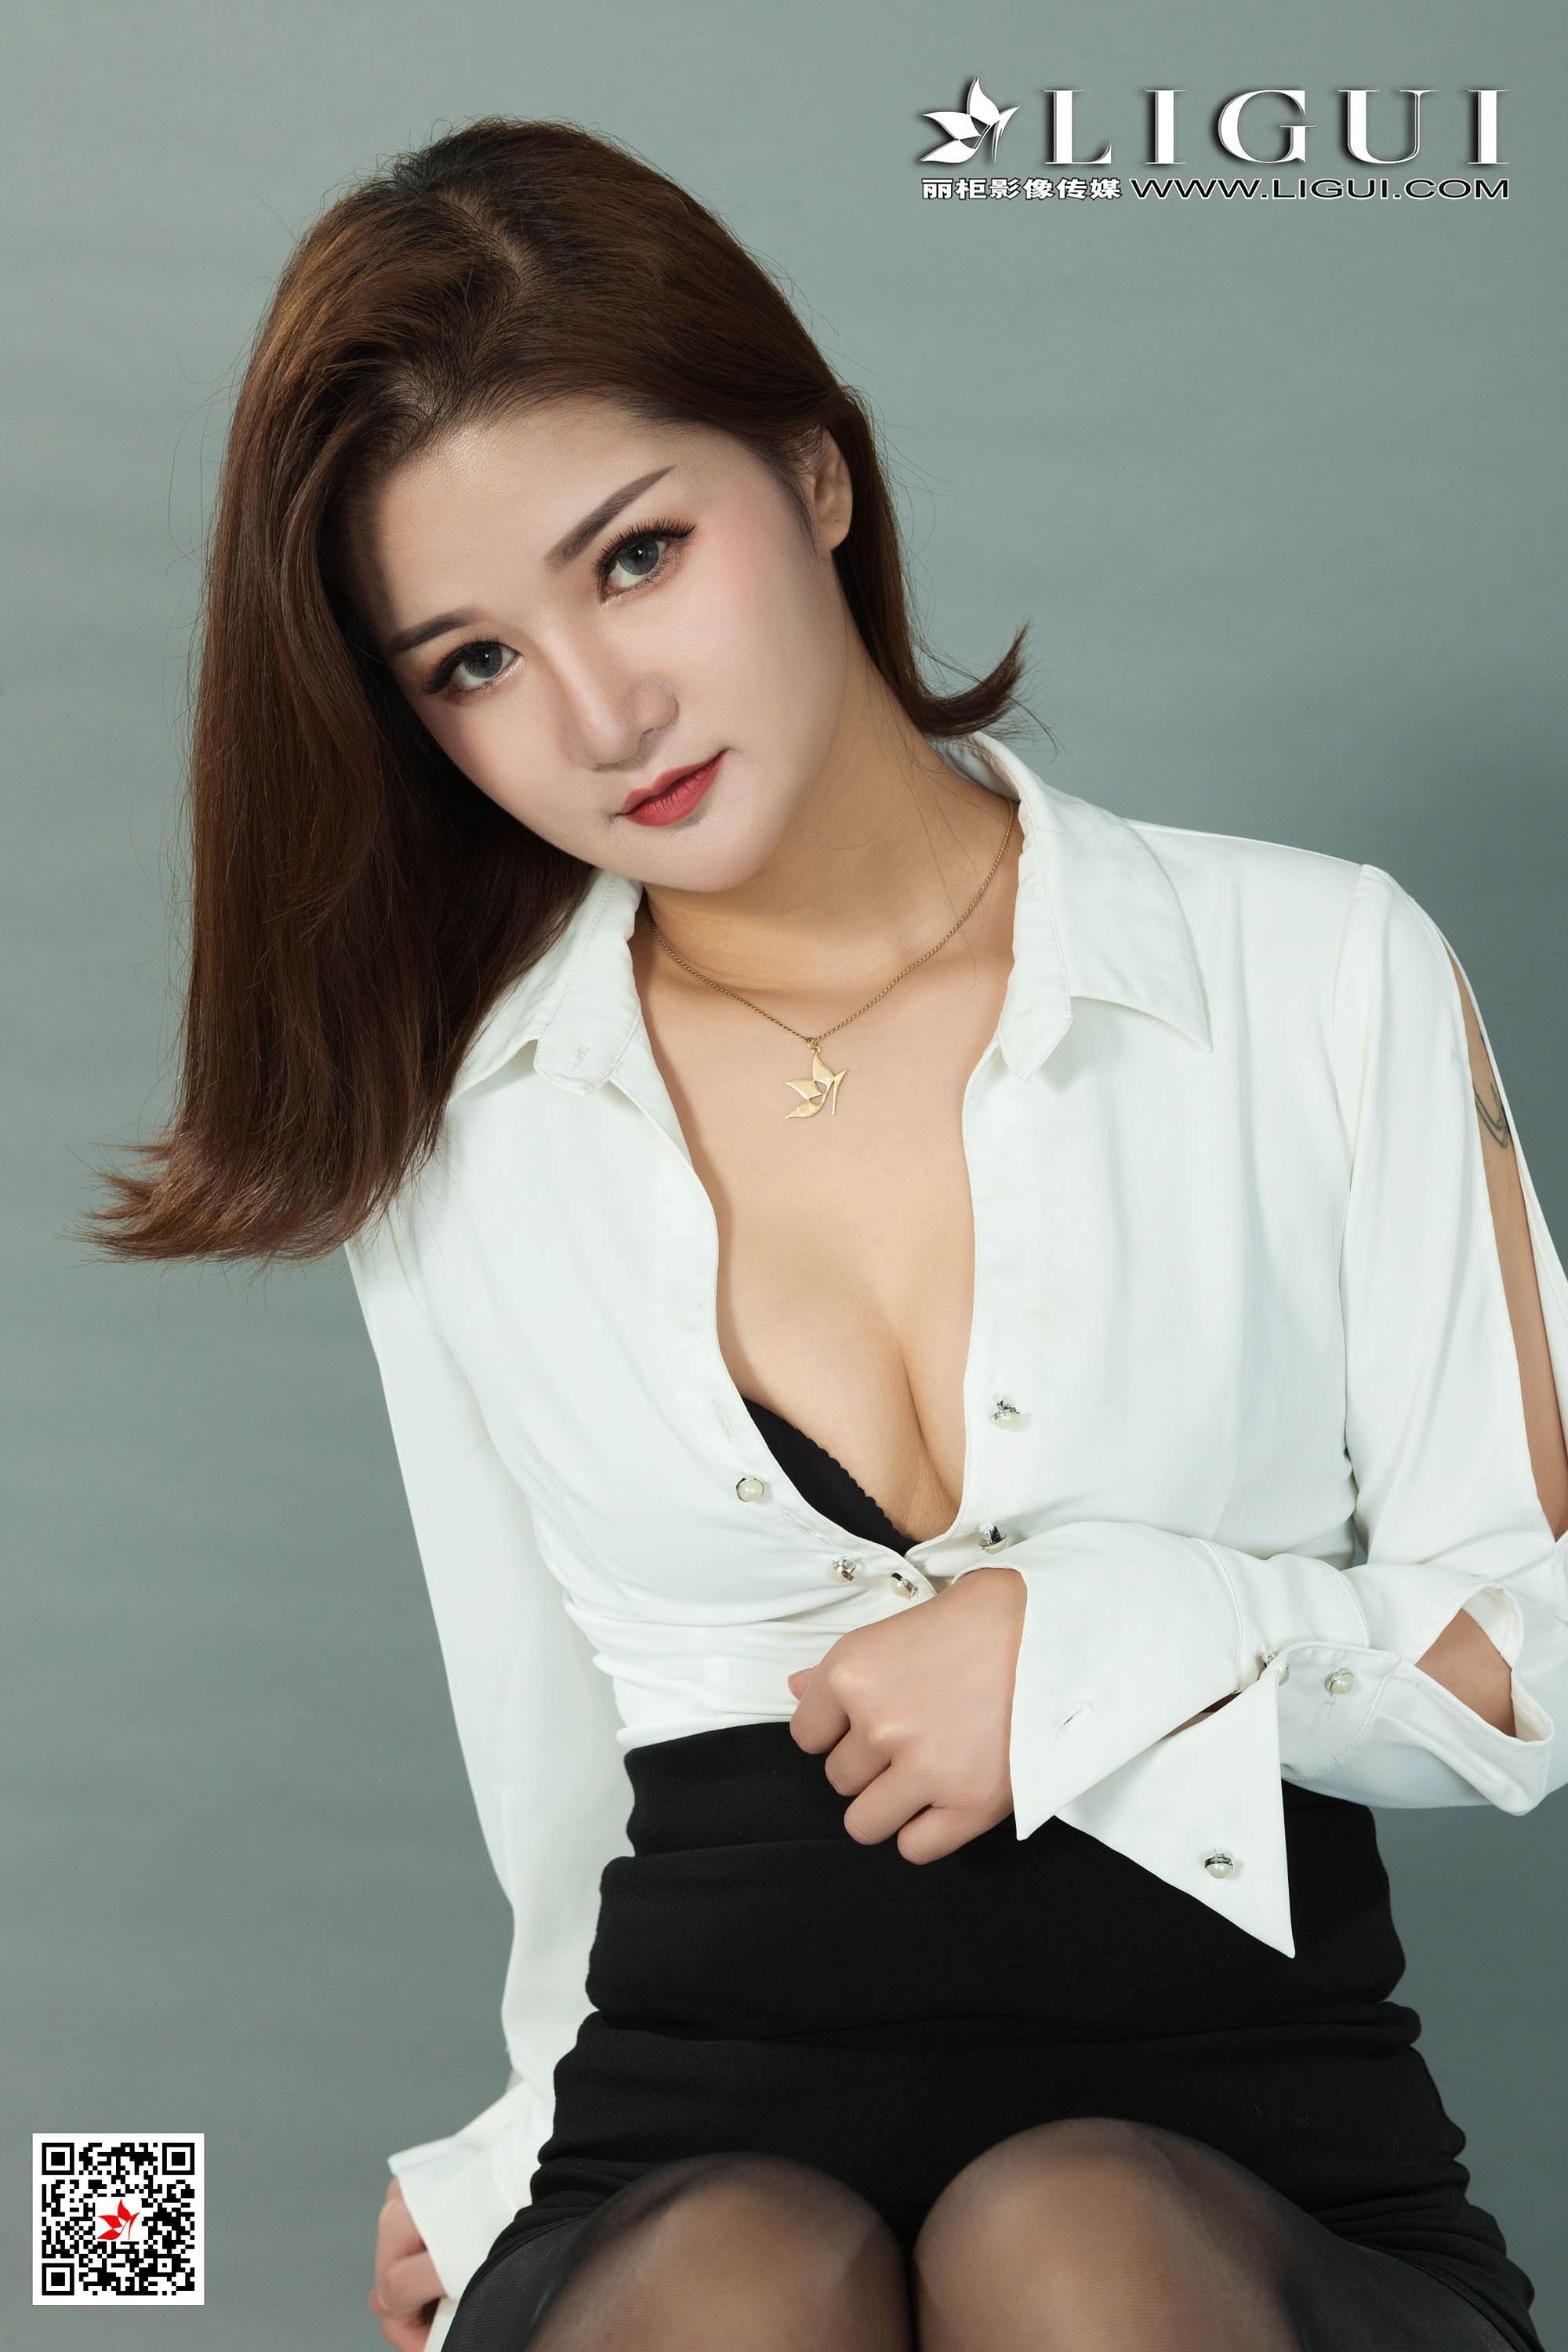 Li Gui Li cabinet 2020.04.02 network beauty model Wen Rui